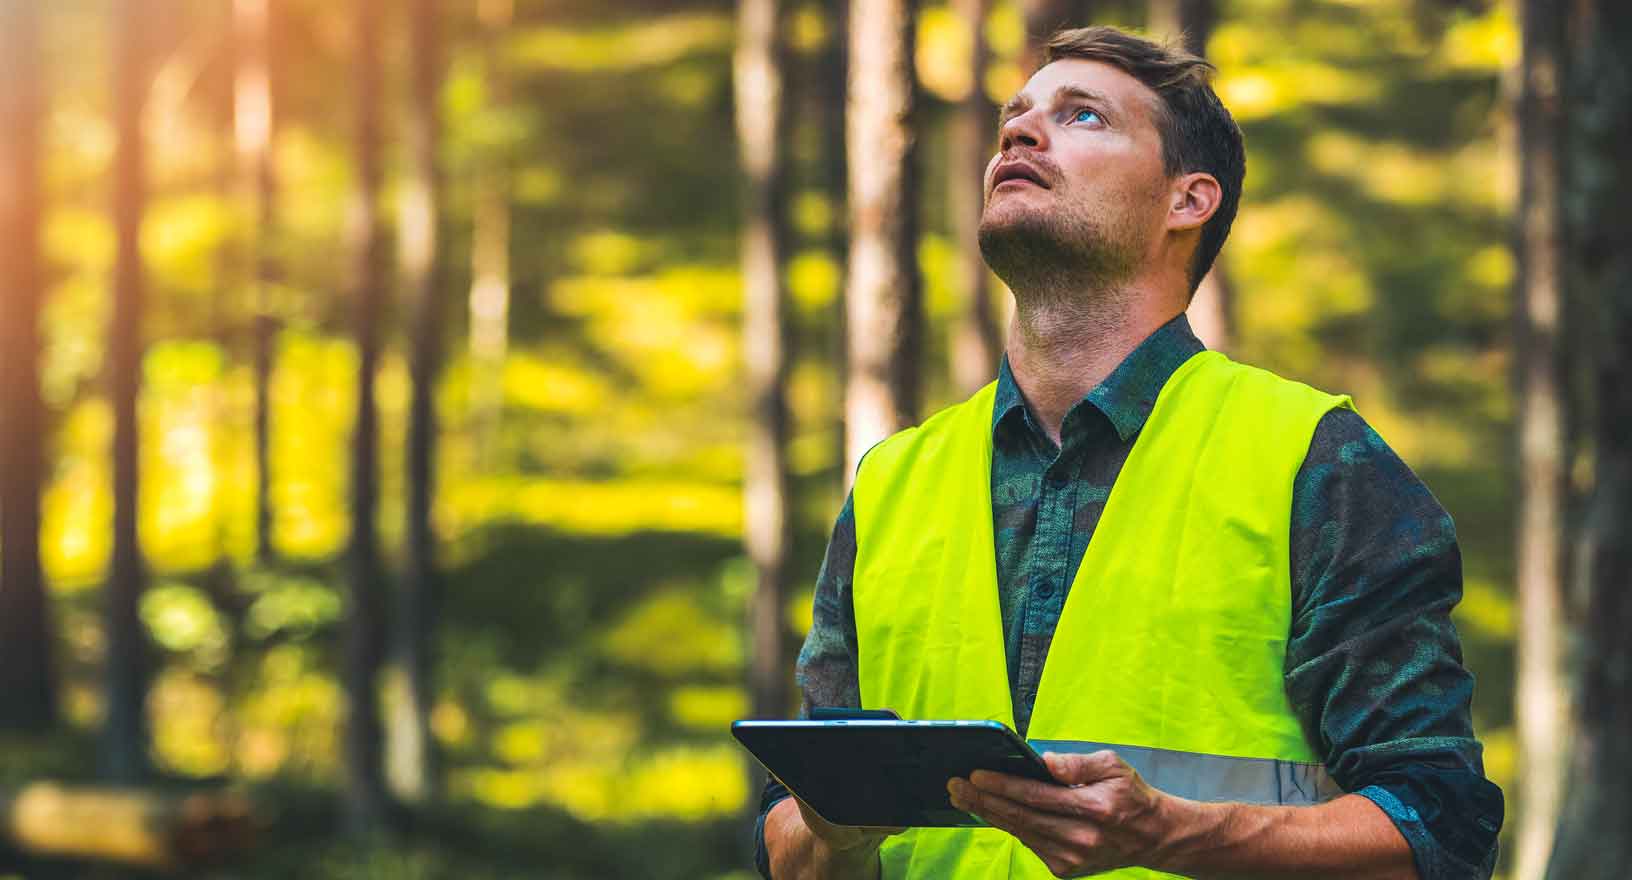 Förster nutzt digitale Tools für die Forstverwaltung 